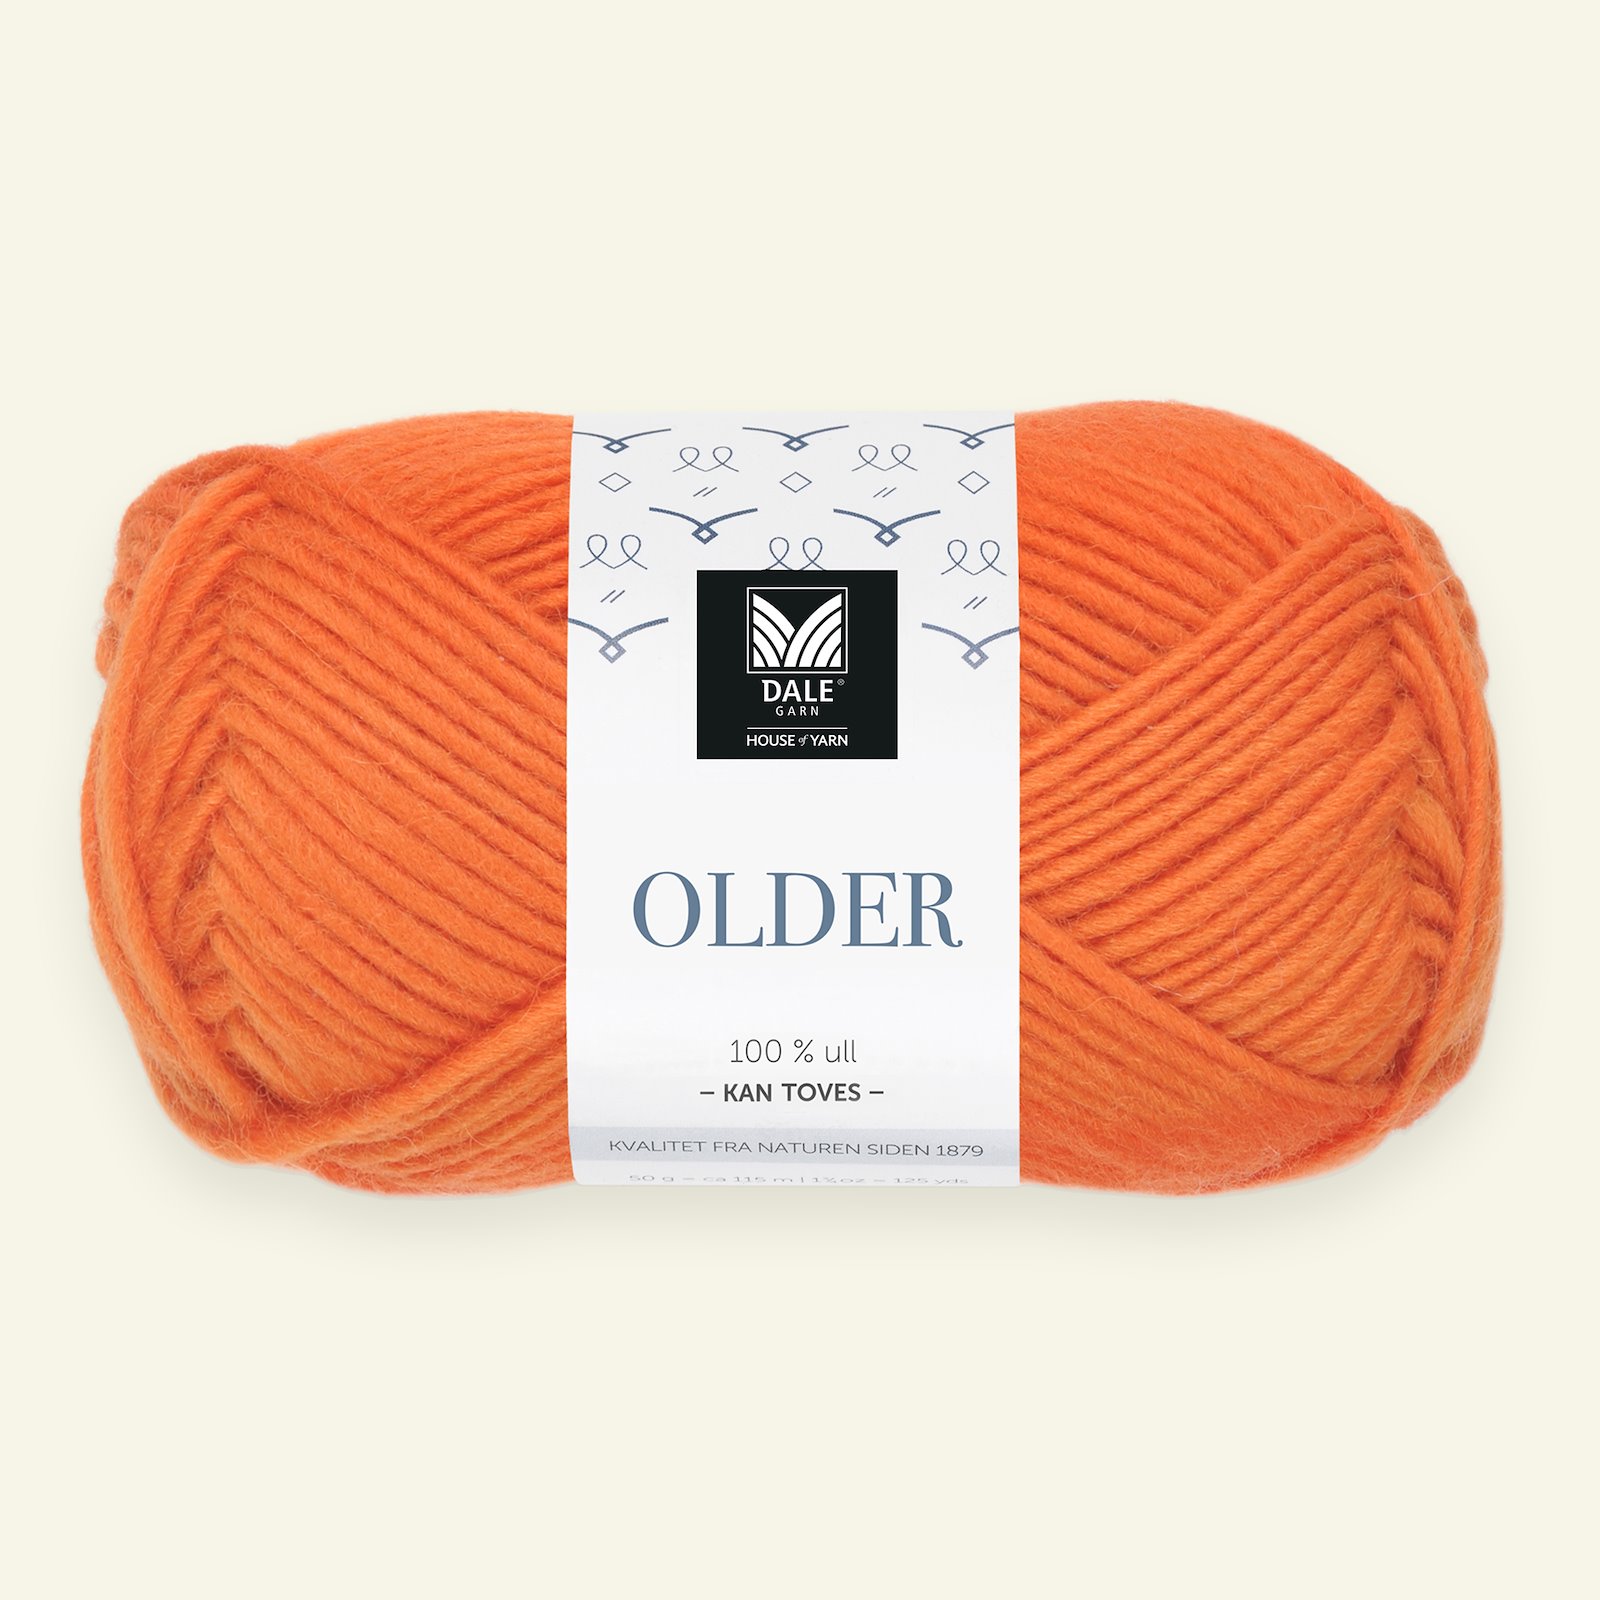 Dale Garn, 100% wool yarn "Older", orange (416) 90000486_pack